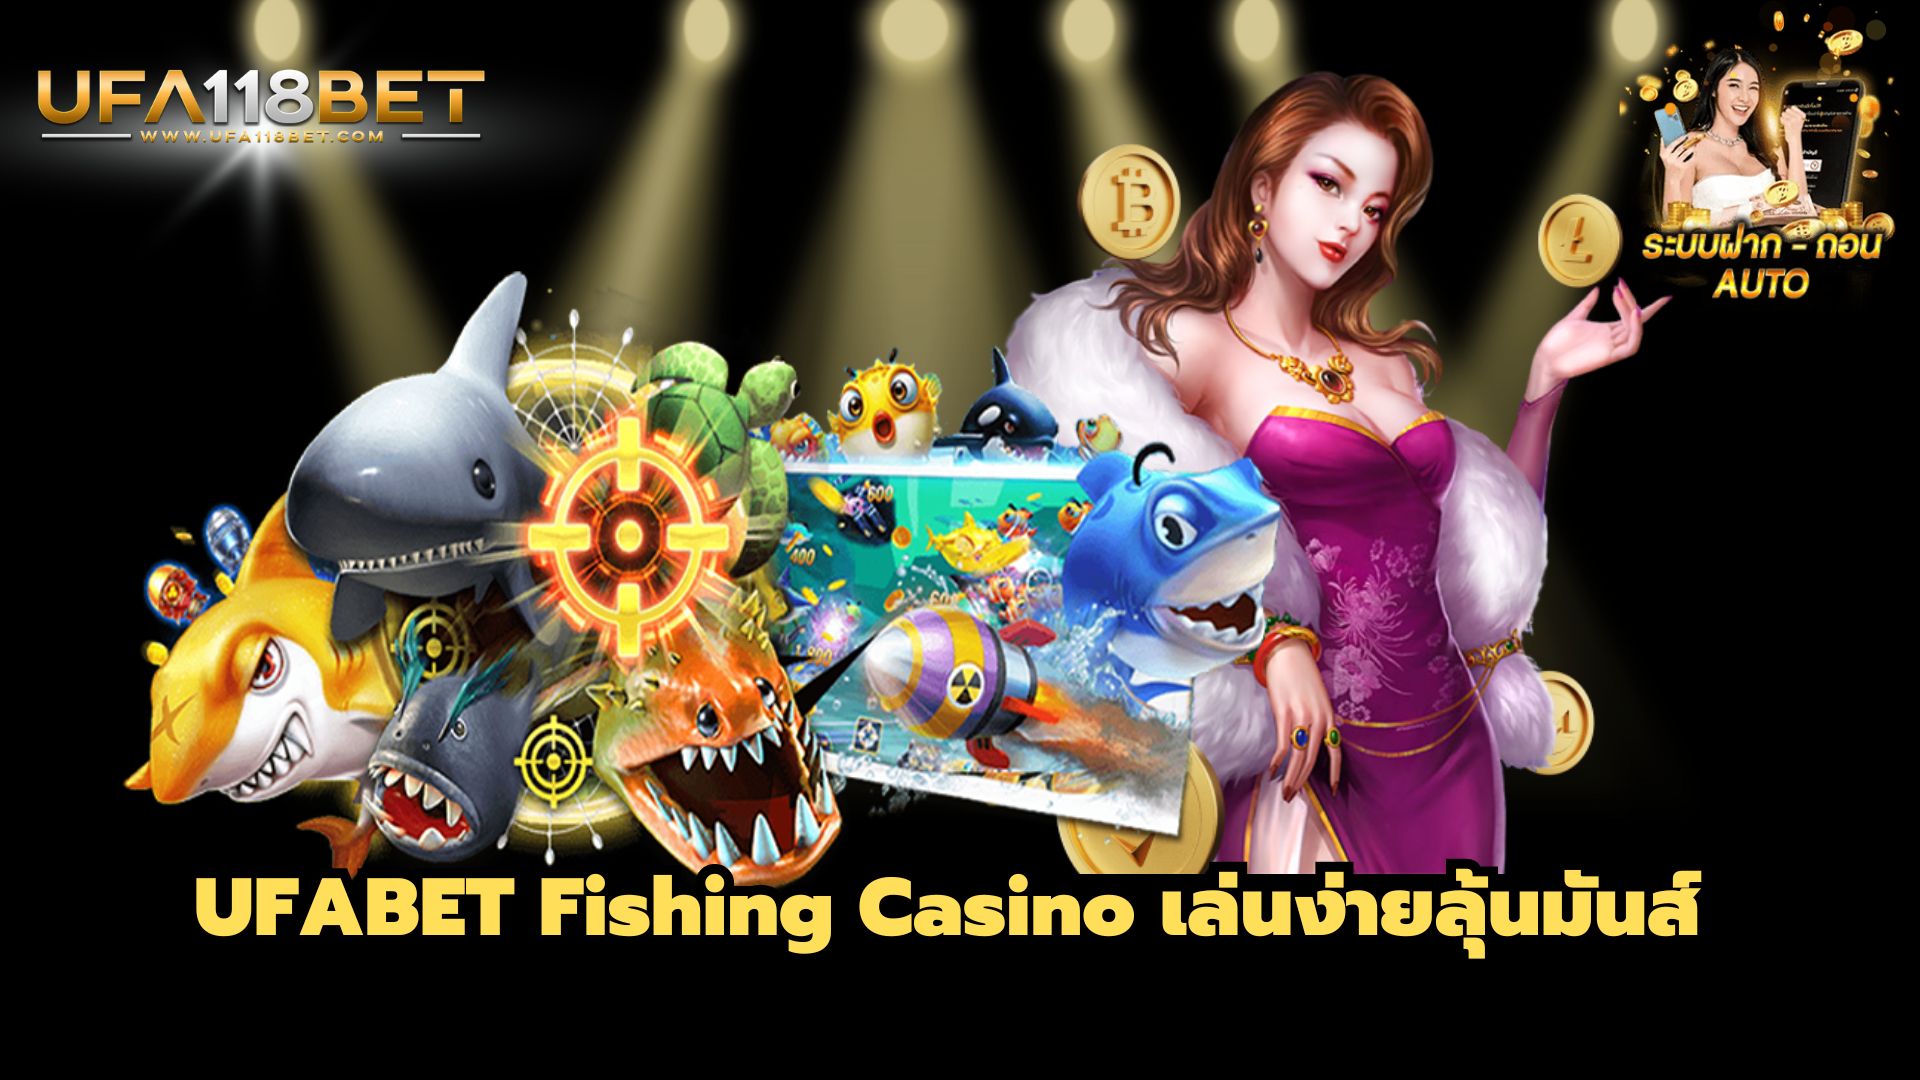 UFABET Fishing Casino เล่นง่ายลุ้นมันส์